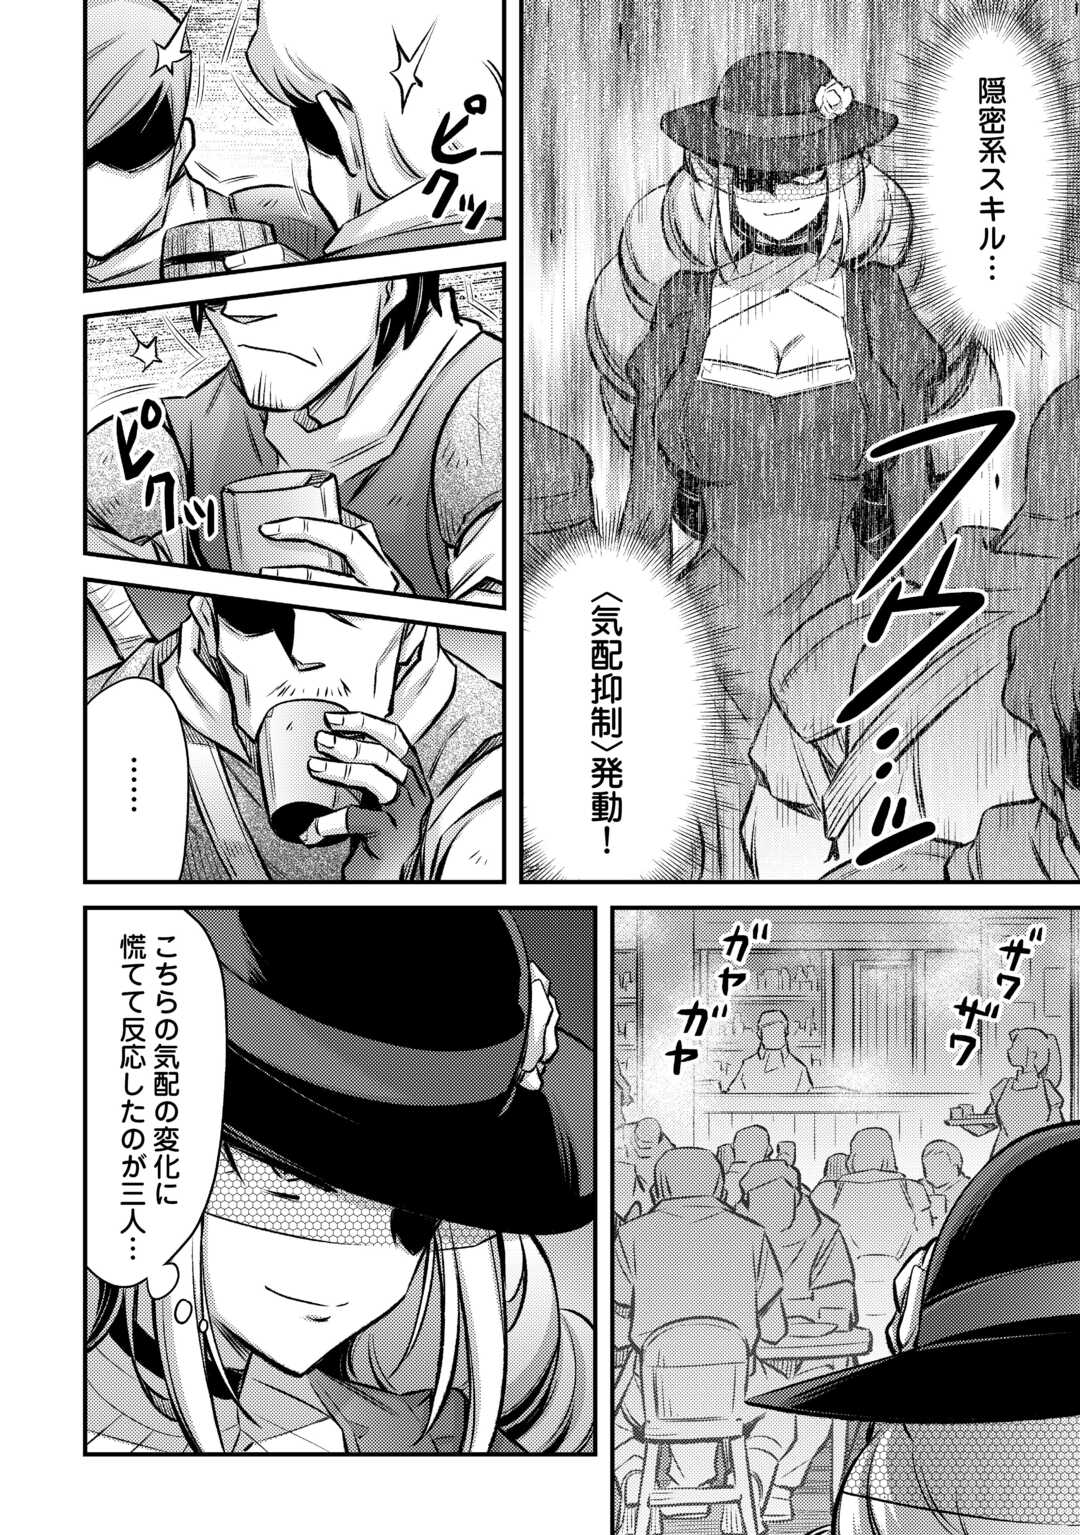 Makikomare Shoukan! Soshite Watashi wa “Kami” Deshita?? - Chapter 38 - Page 1